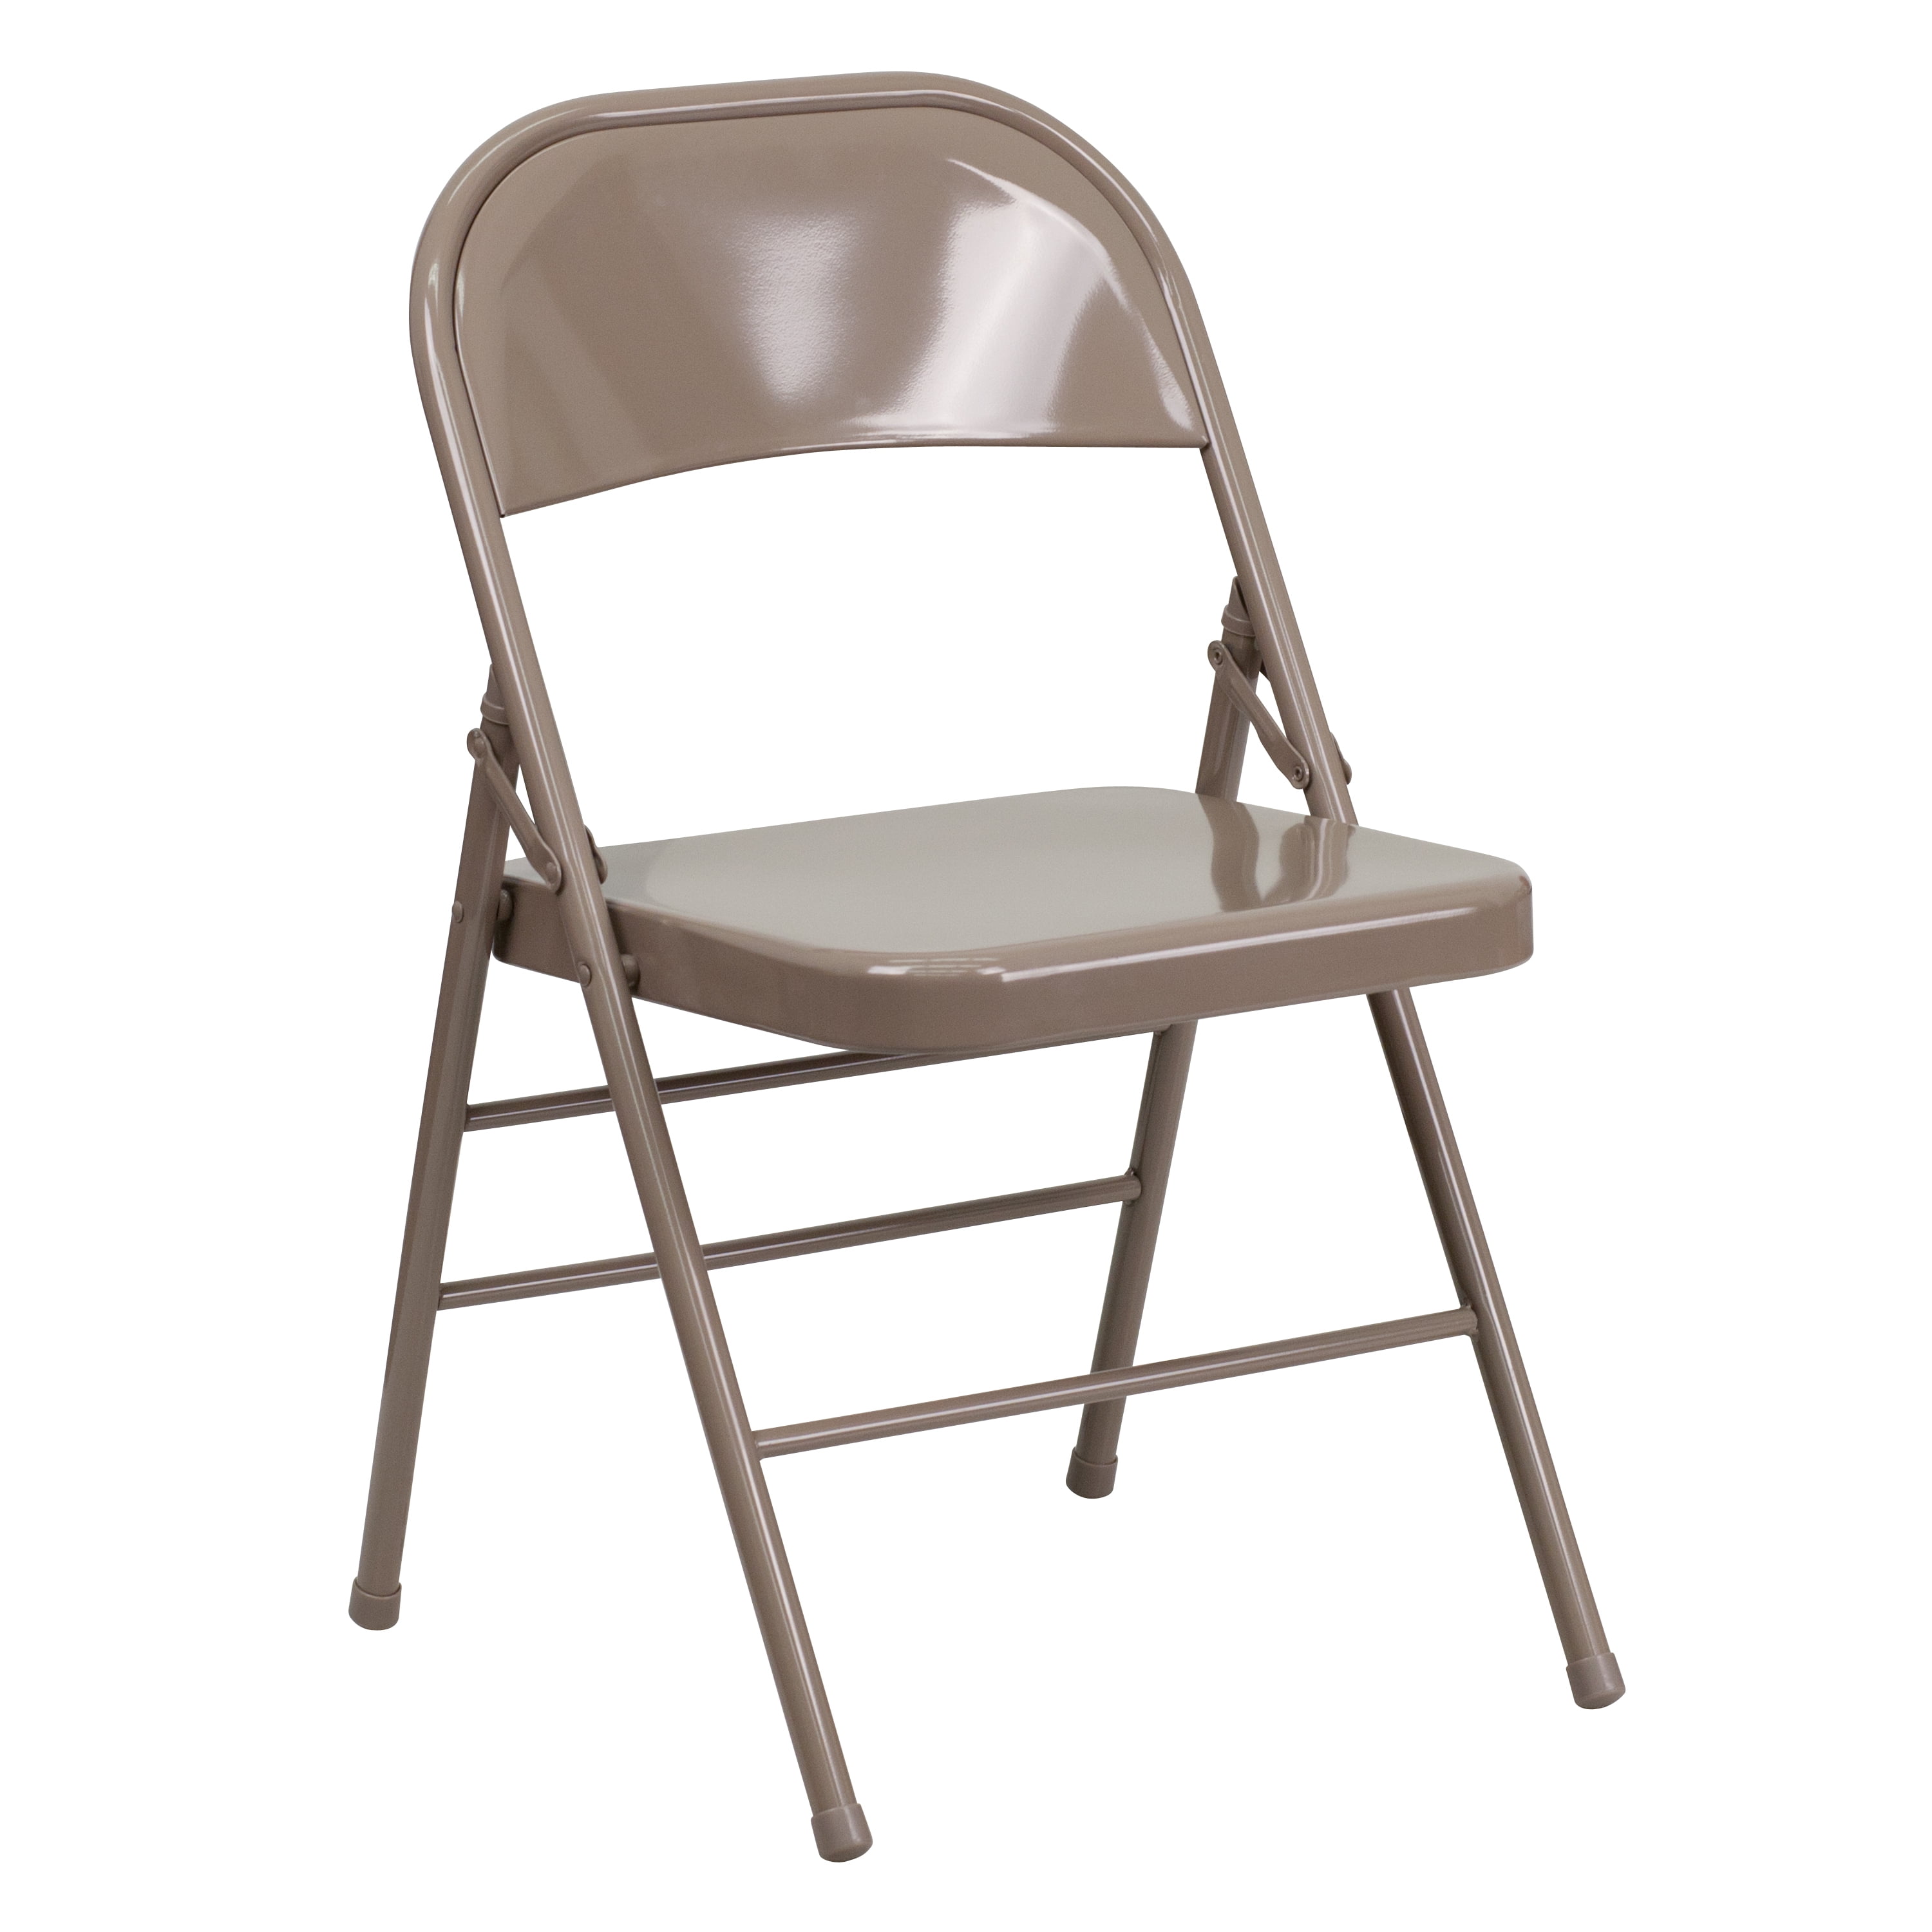 Flash Furniture HERCULES Series Triple Braced & Double Hinged Beige Metal Folding Chair - image 1 of 12